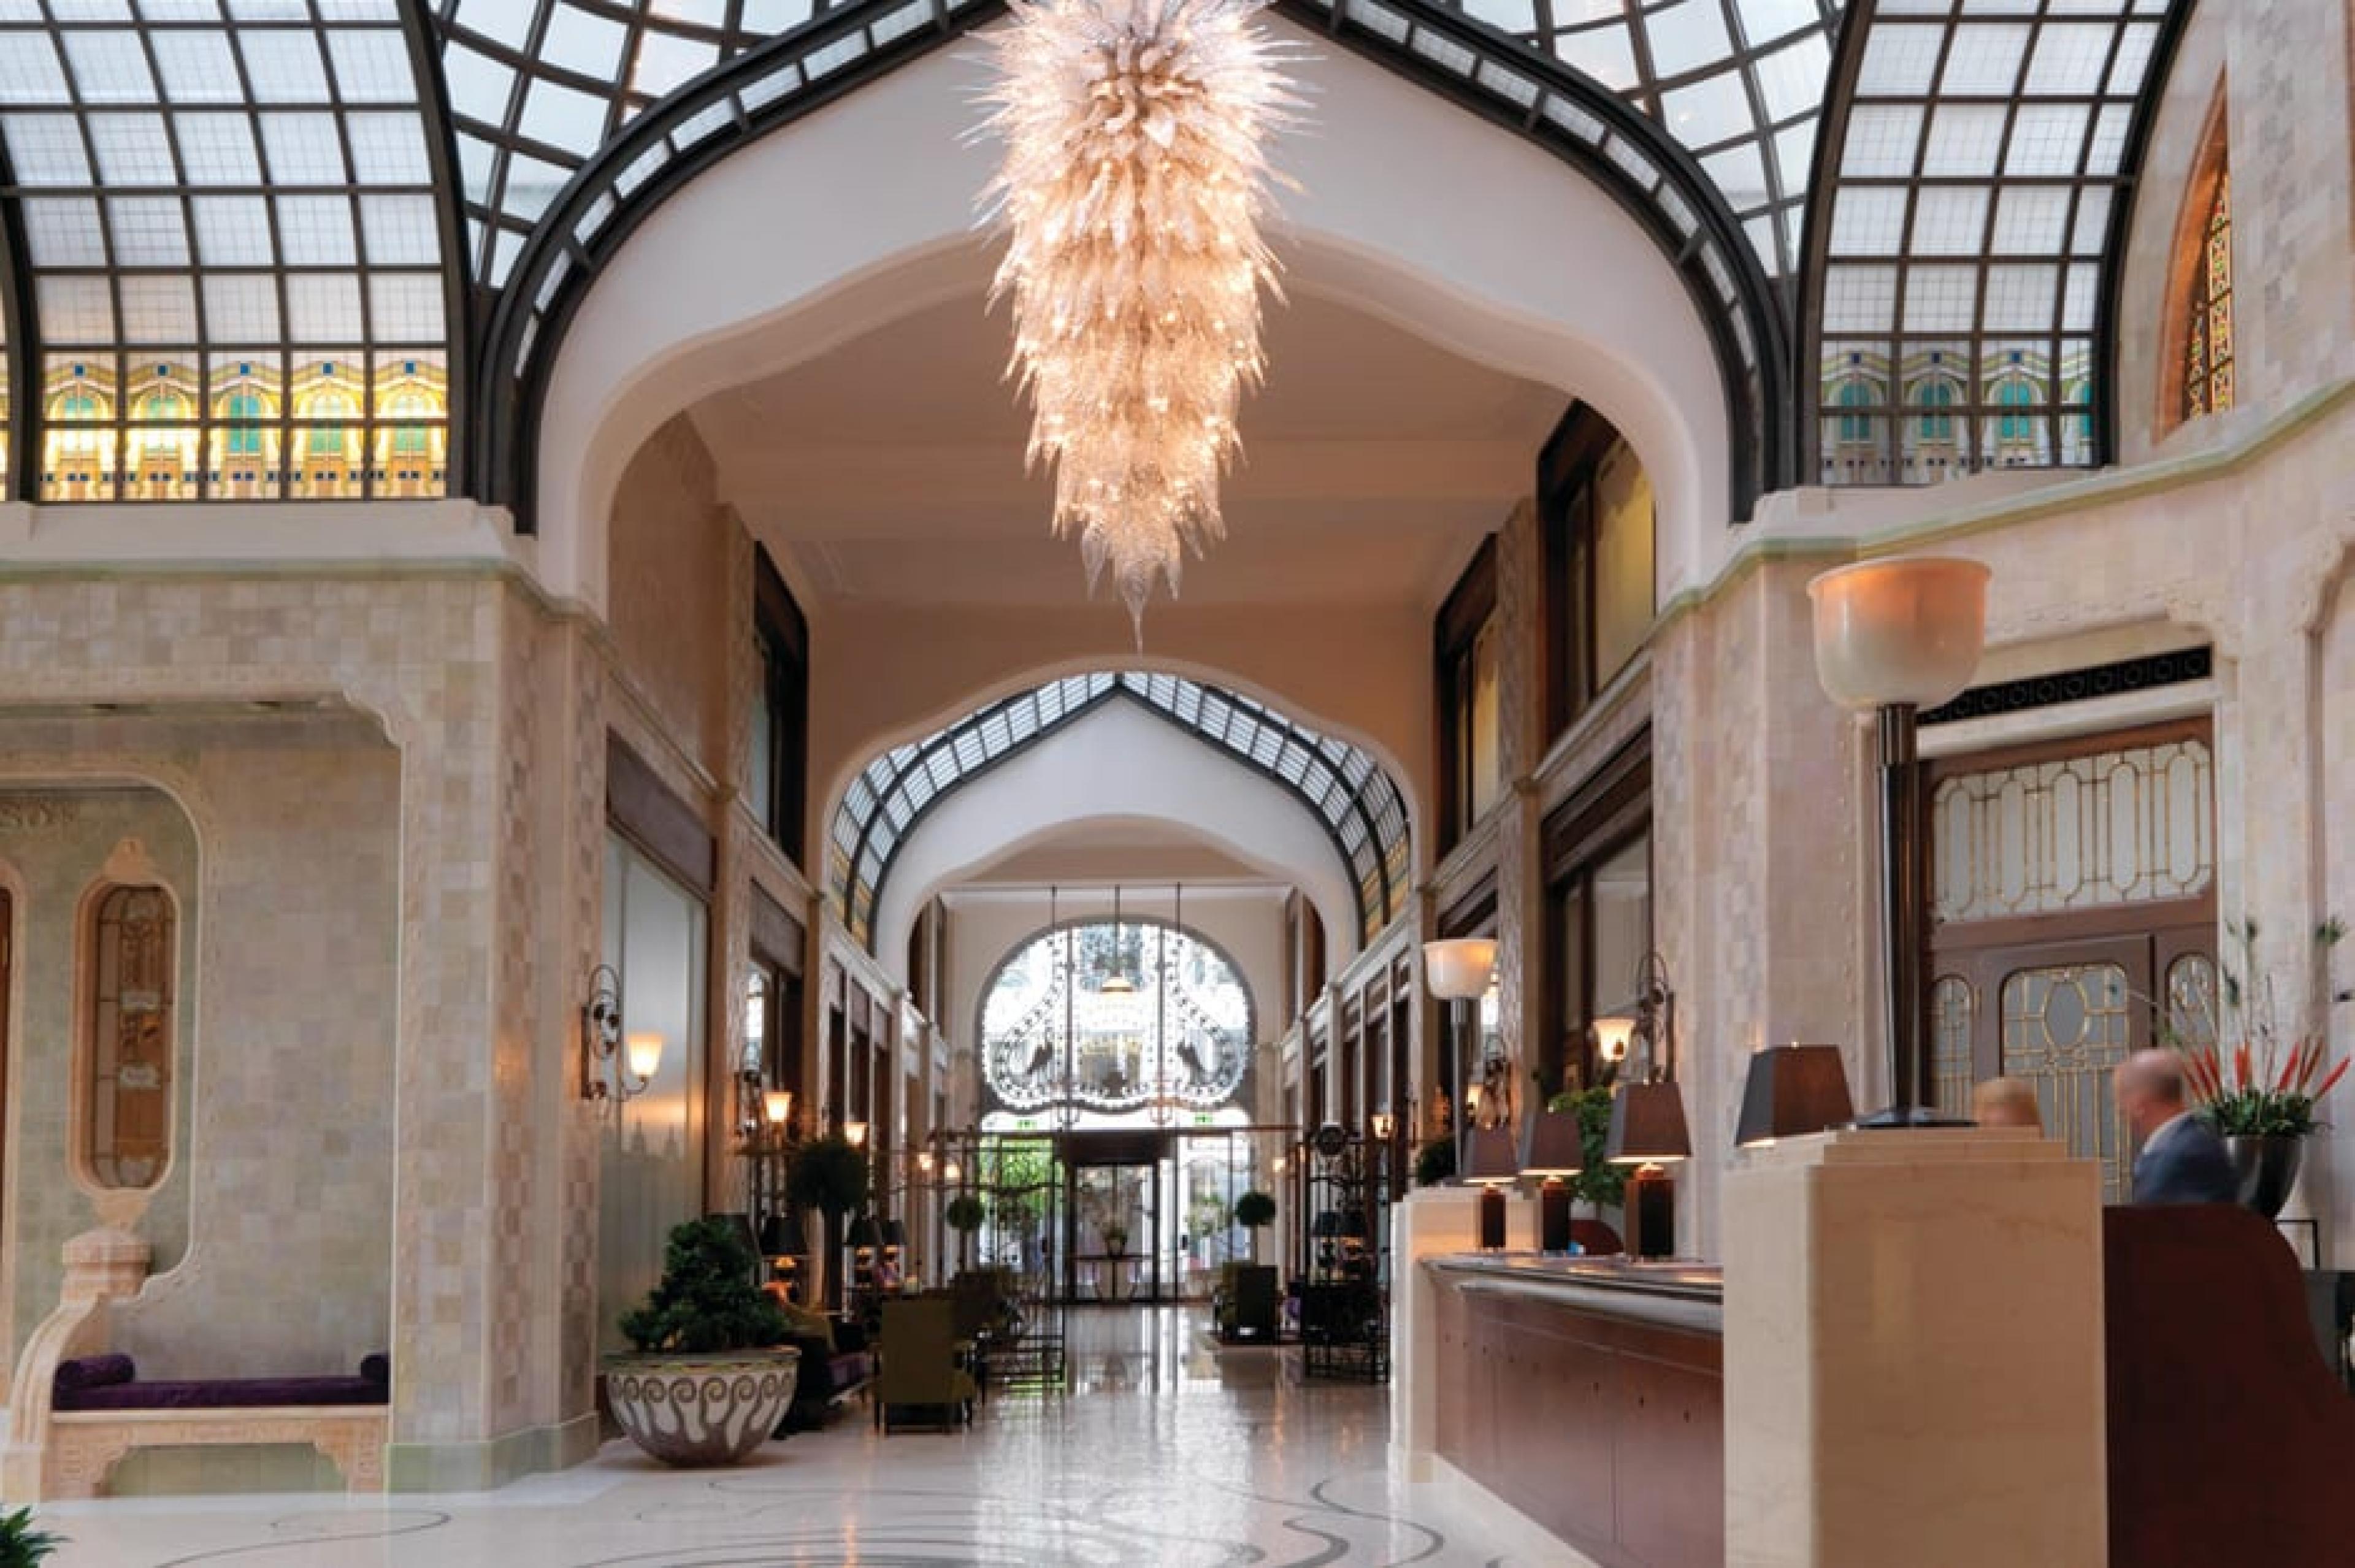  Reception at Four Seasons Hotel Gresham Palace, Budapest, Hungary